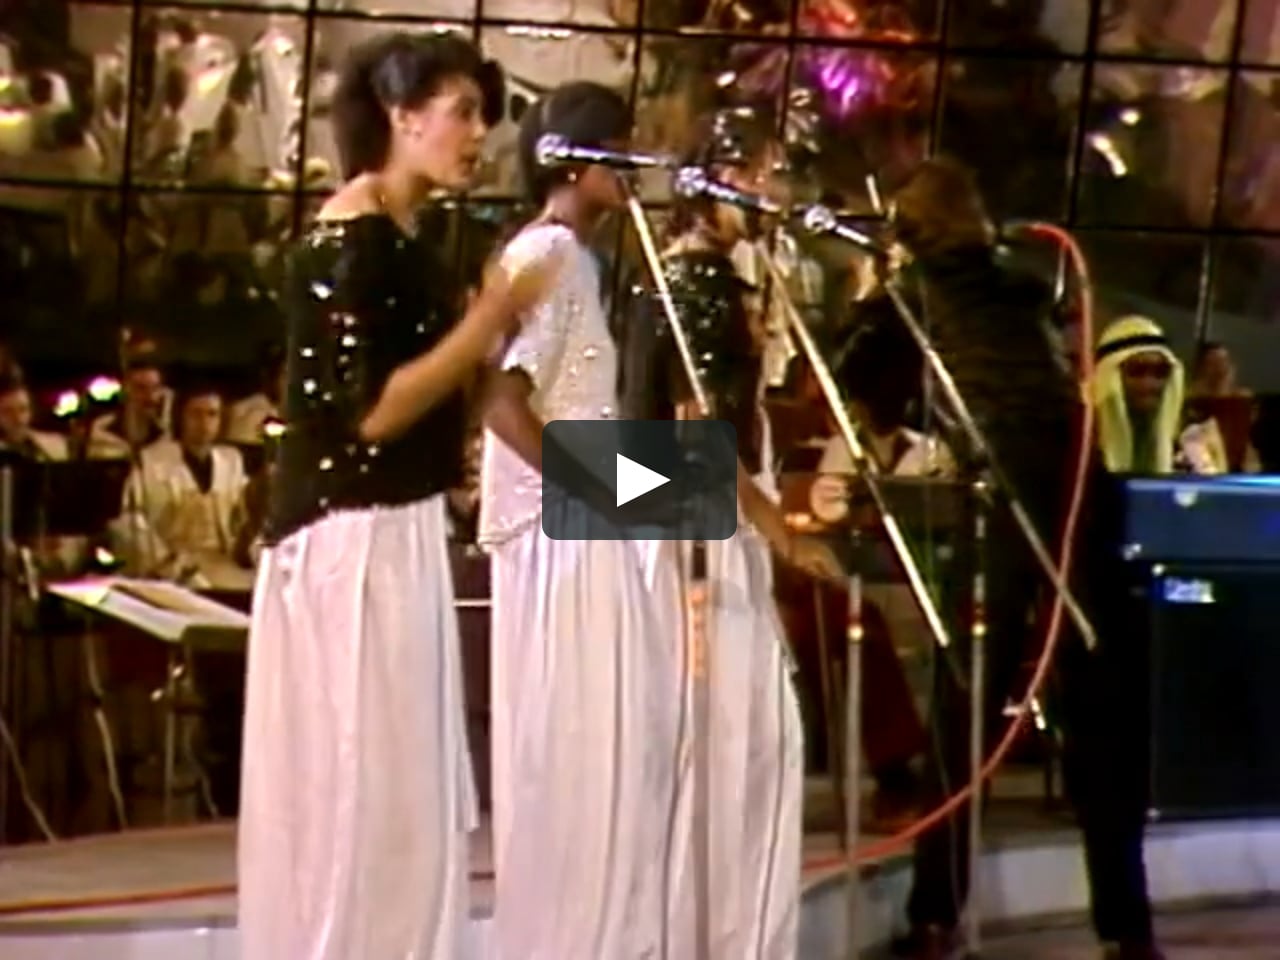 boney-m-ma-baker-sopot-festival-1979-vod-on-vimeo